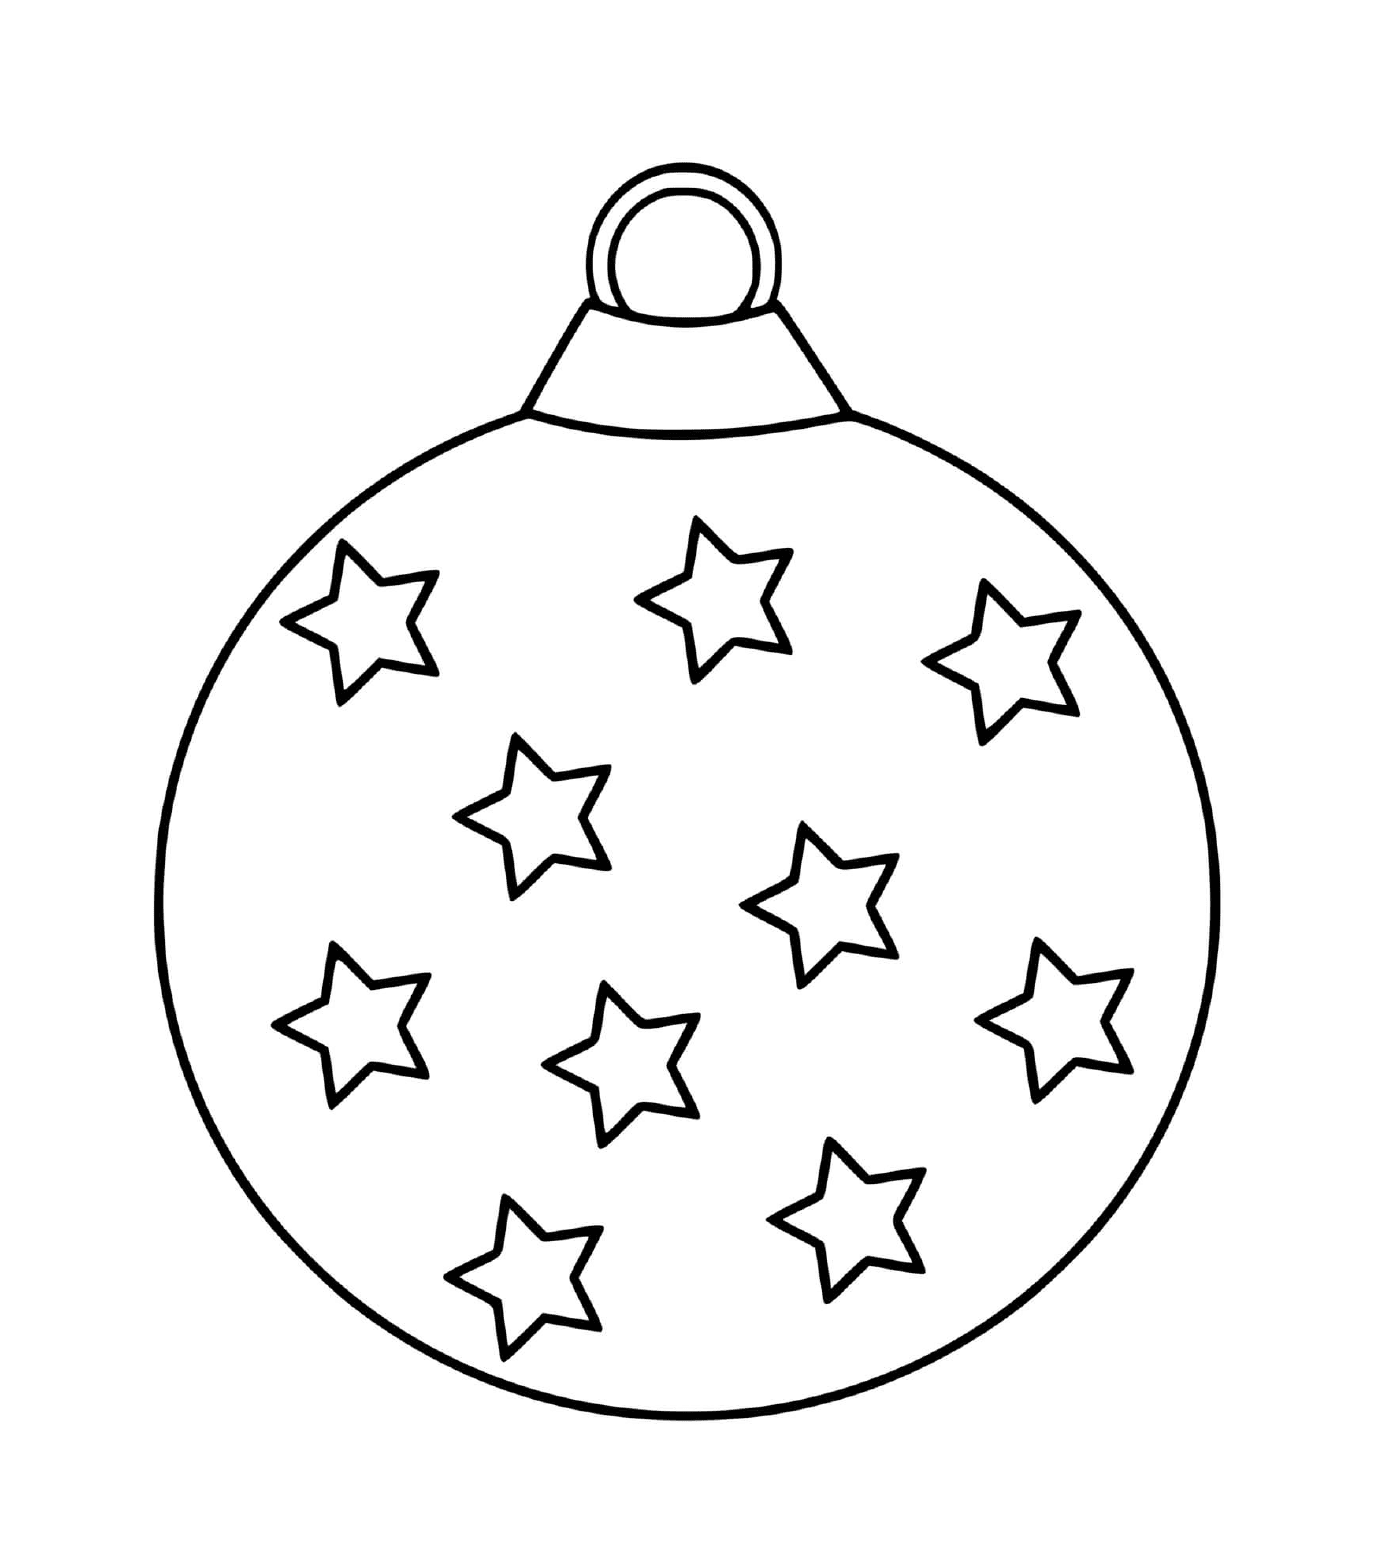  Bola de Natal com estrelas 